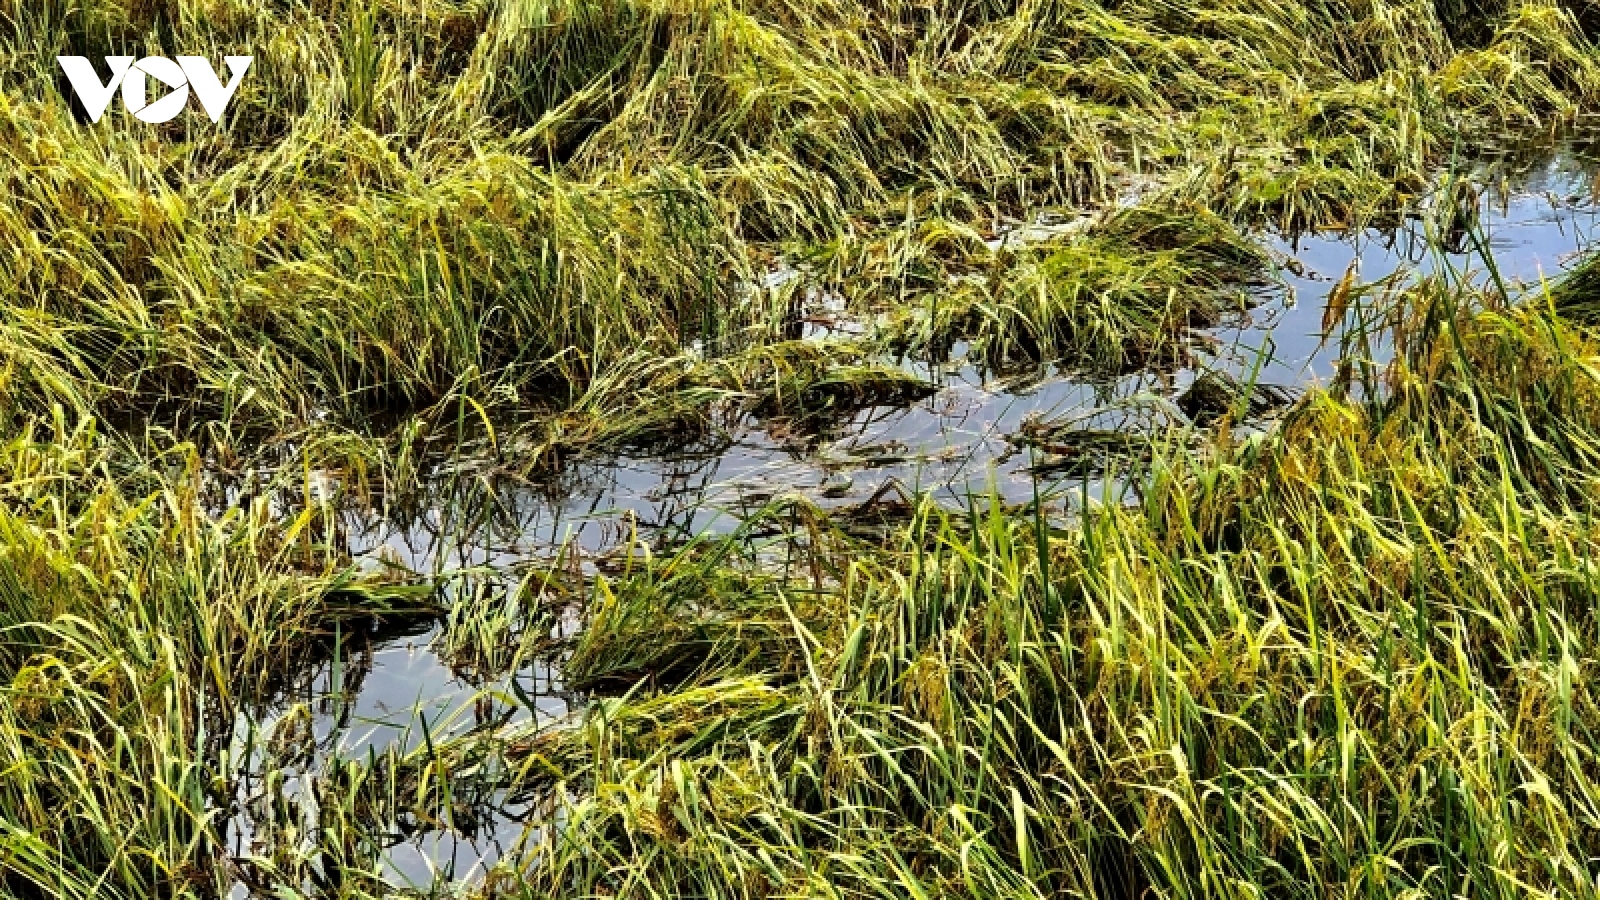 Lúa Đông xuân thiệt hại nặng do mưa trái mùa ở Bạc Liêu